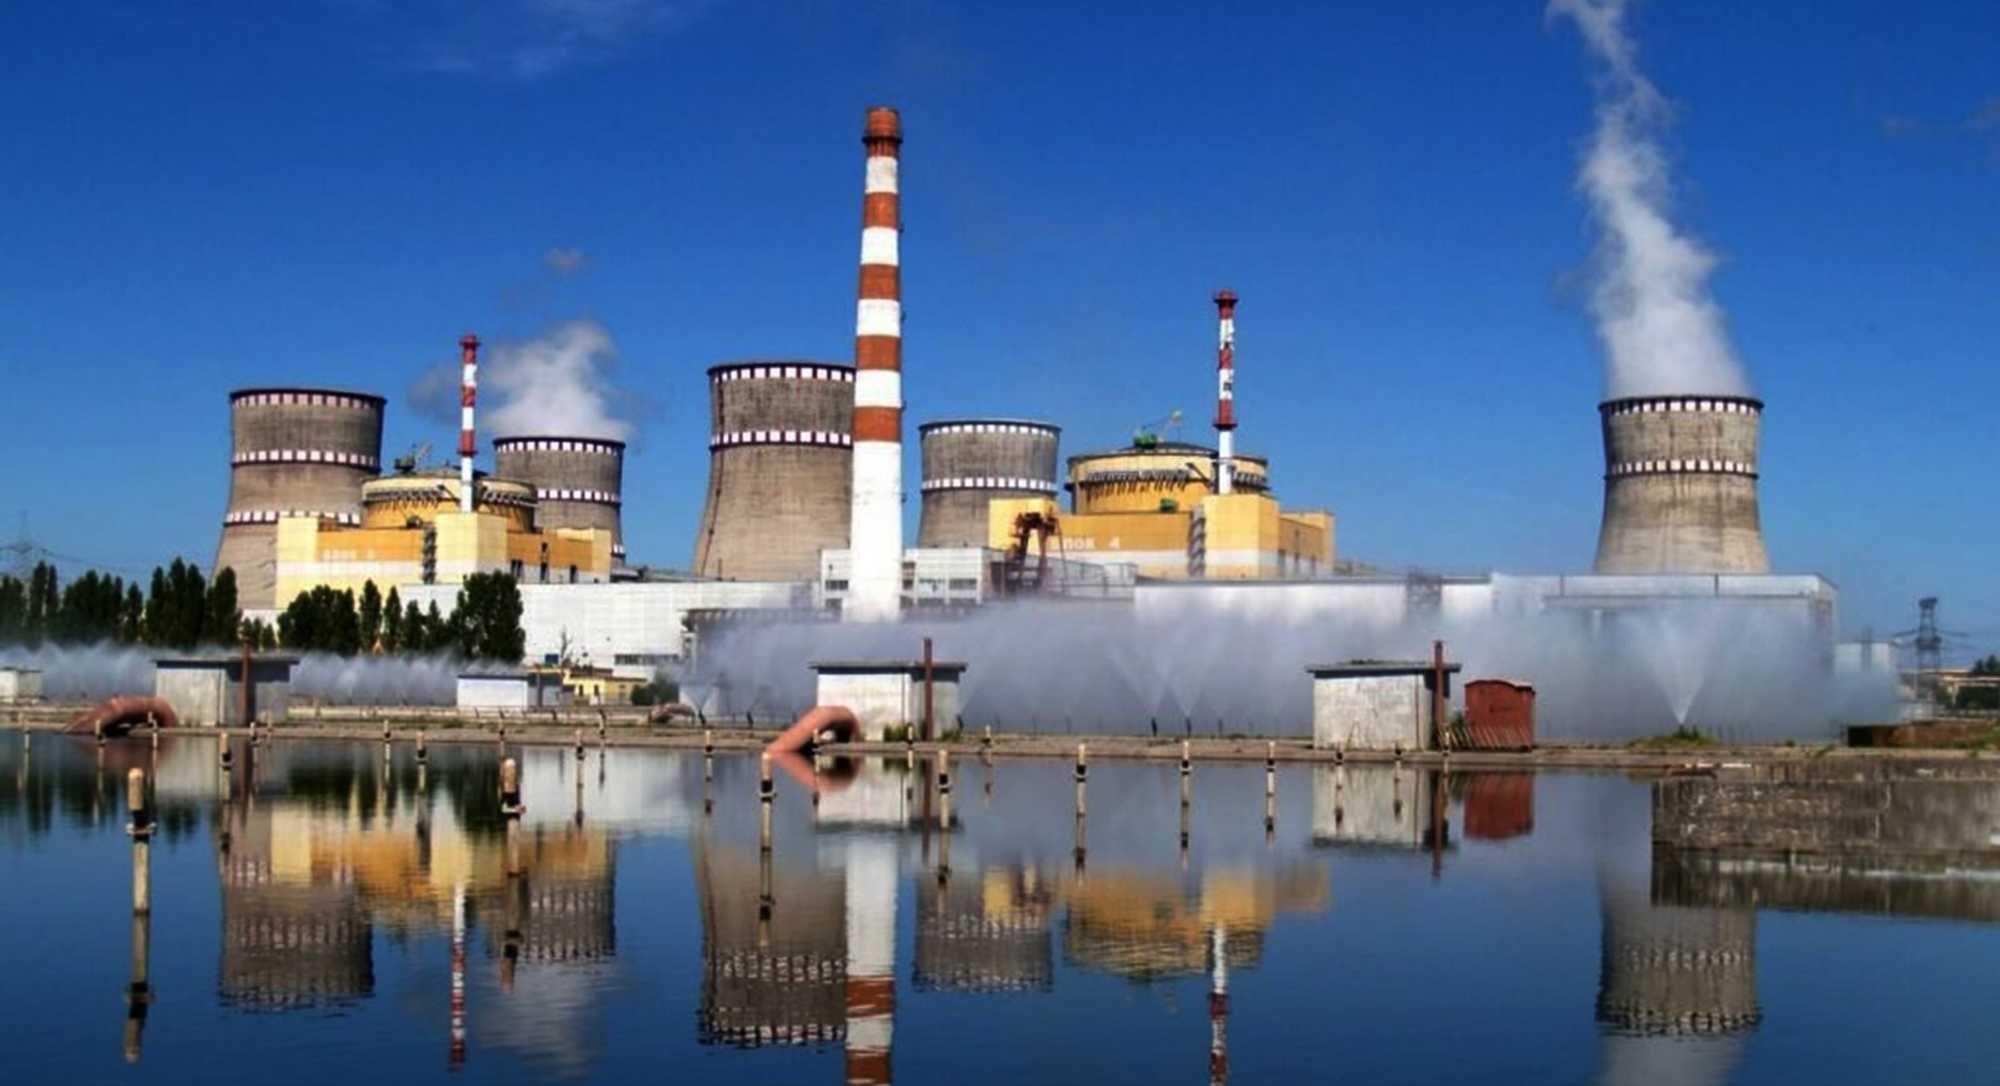 مدير الوكالة الذرية يحذر من وضع خطر في محطة زابوريجيا النووية